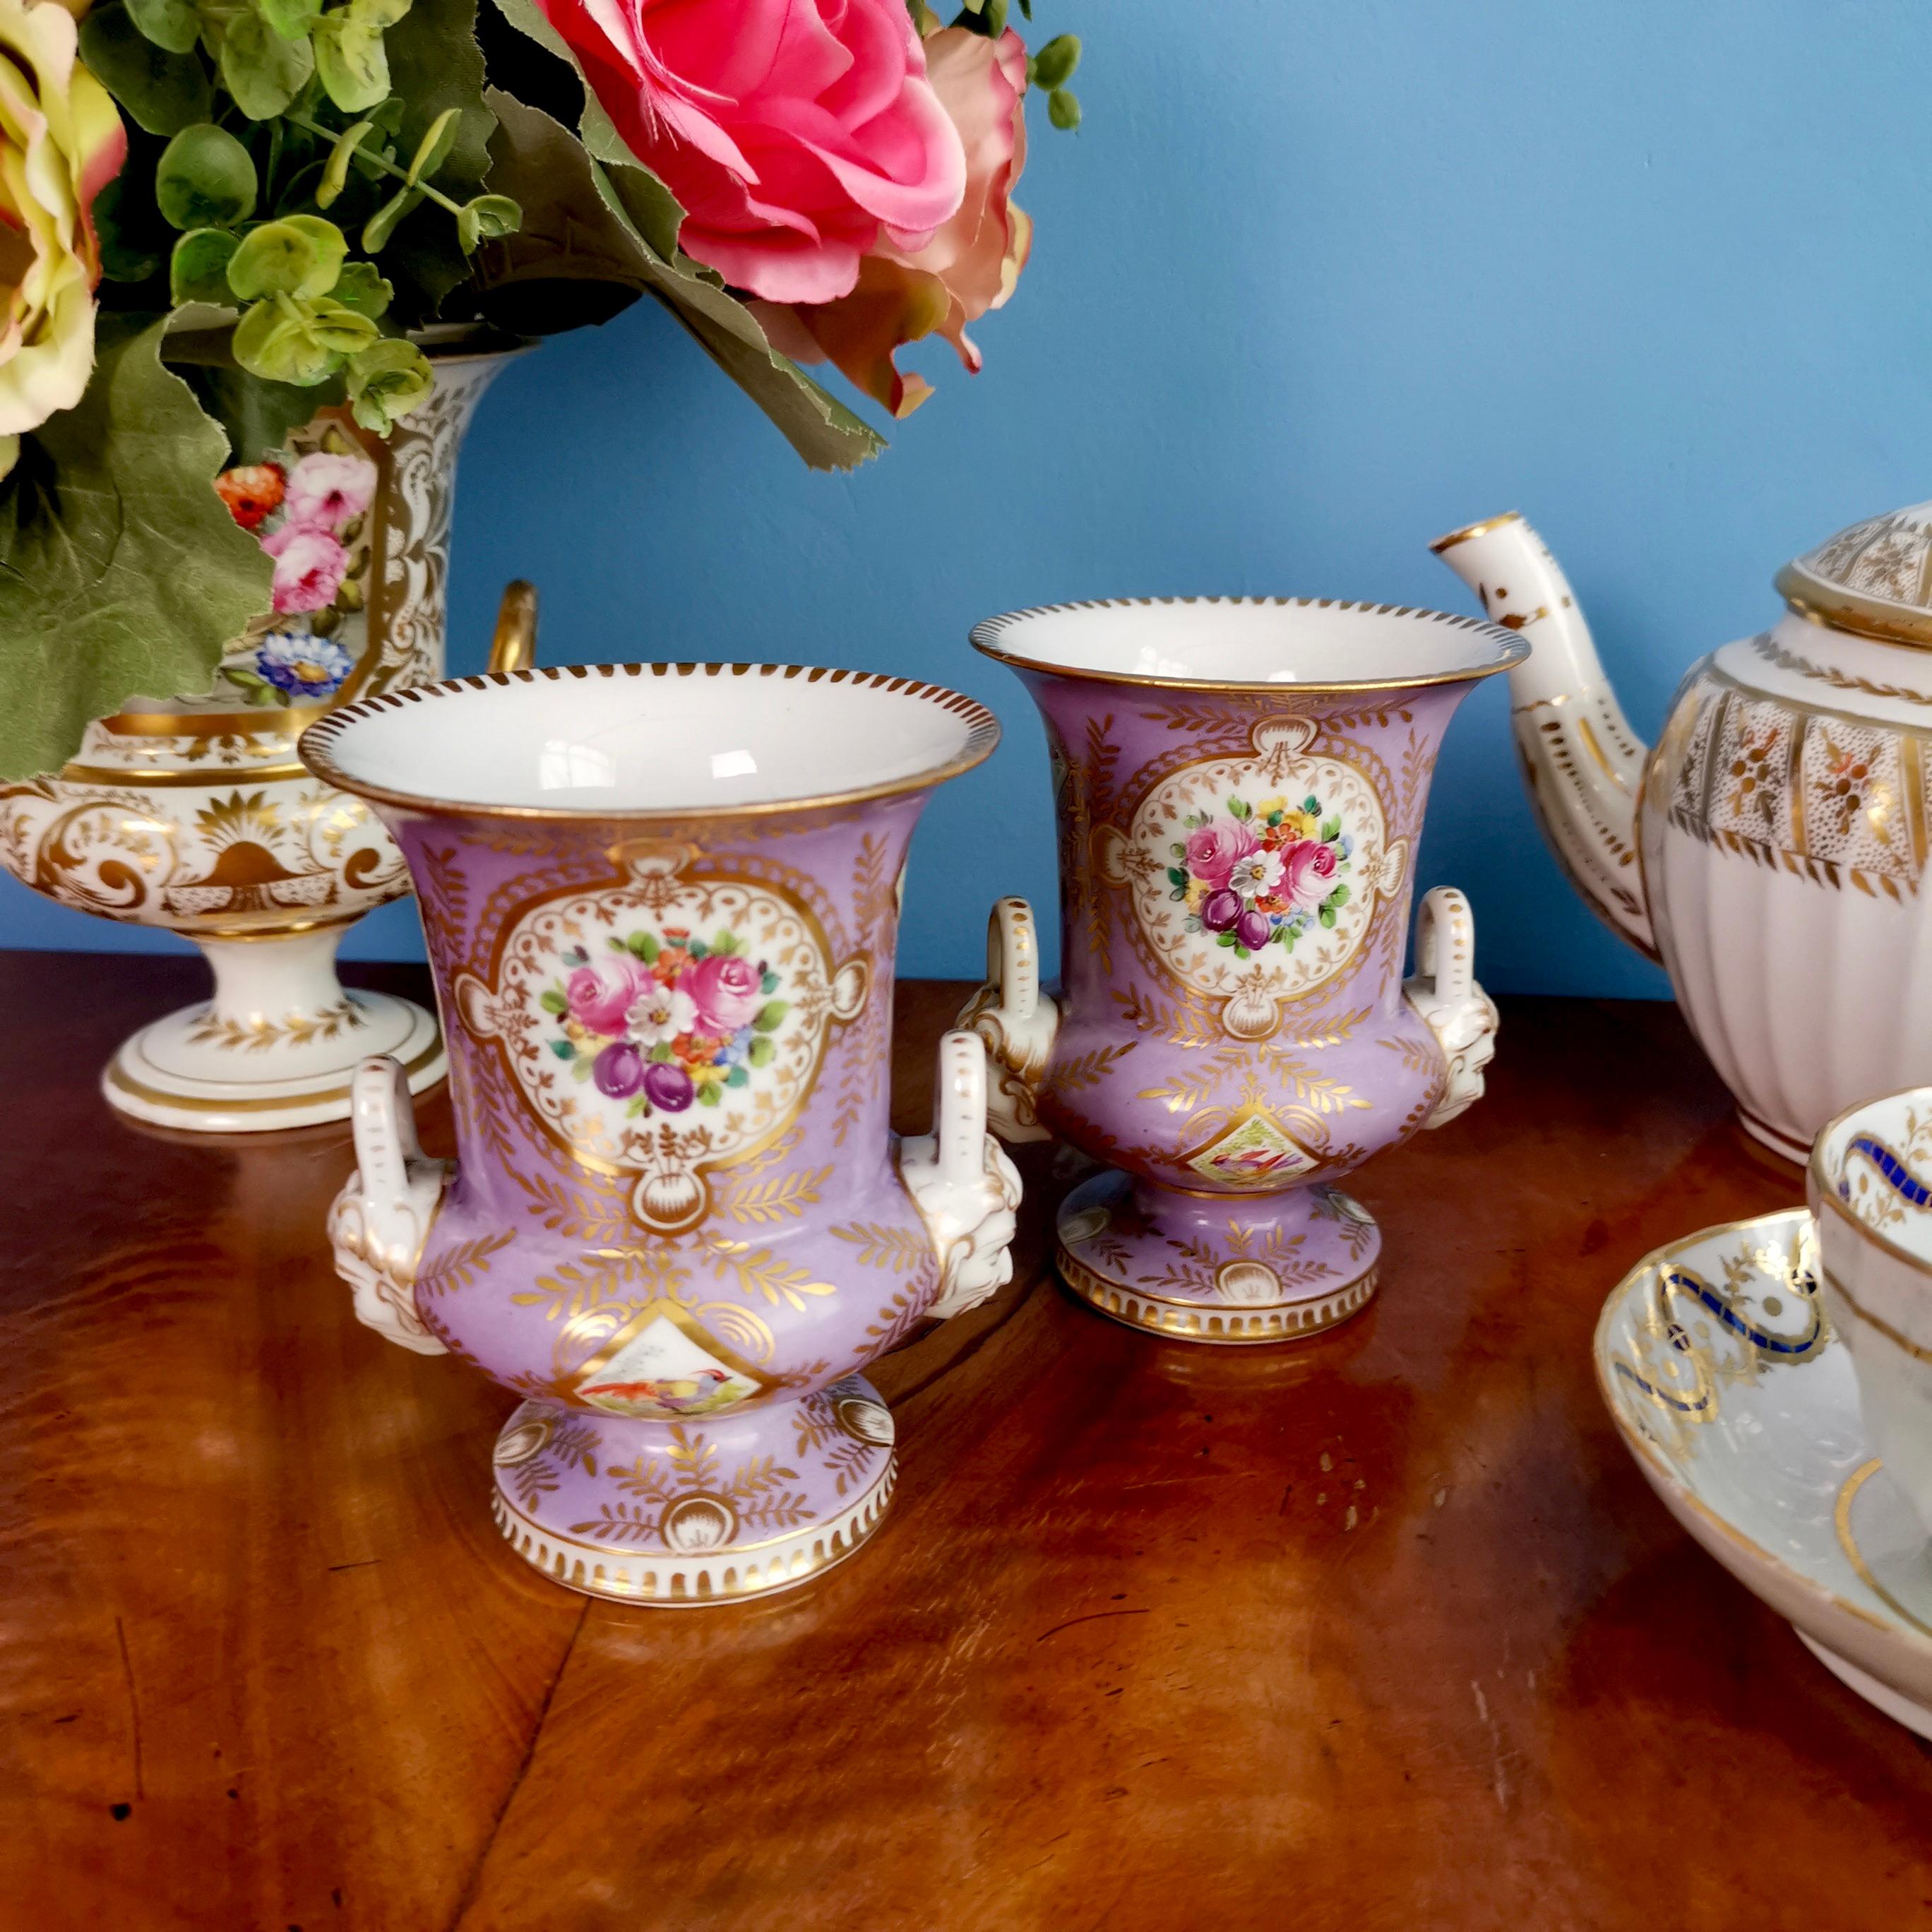 Angeboten wird ein Satz von zwei schönen Campana-Vasen aus Porzellan, die um 1815 hergestellt wurden und Edmé Samson in Paris zugeschrieben werden. Die Vasen haben einen schönen fliederfarbenen Grund, eine schöne Vergoldung und handgemalte